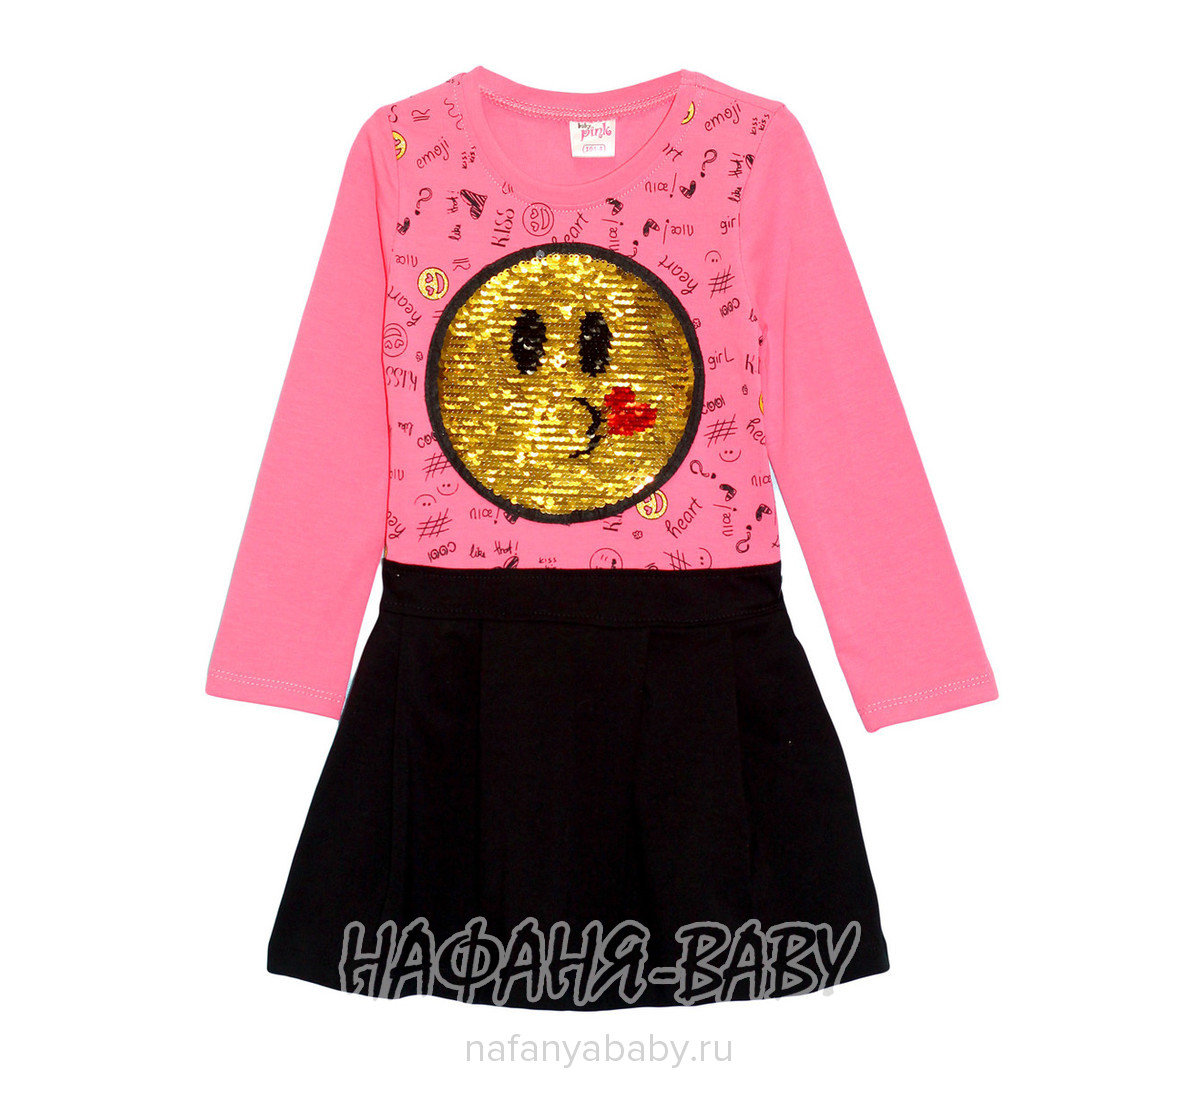 Детское платье с паетками PINK арт: 9641, 1-4 года, 5-9 лет, оптом Турция